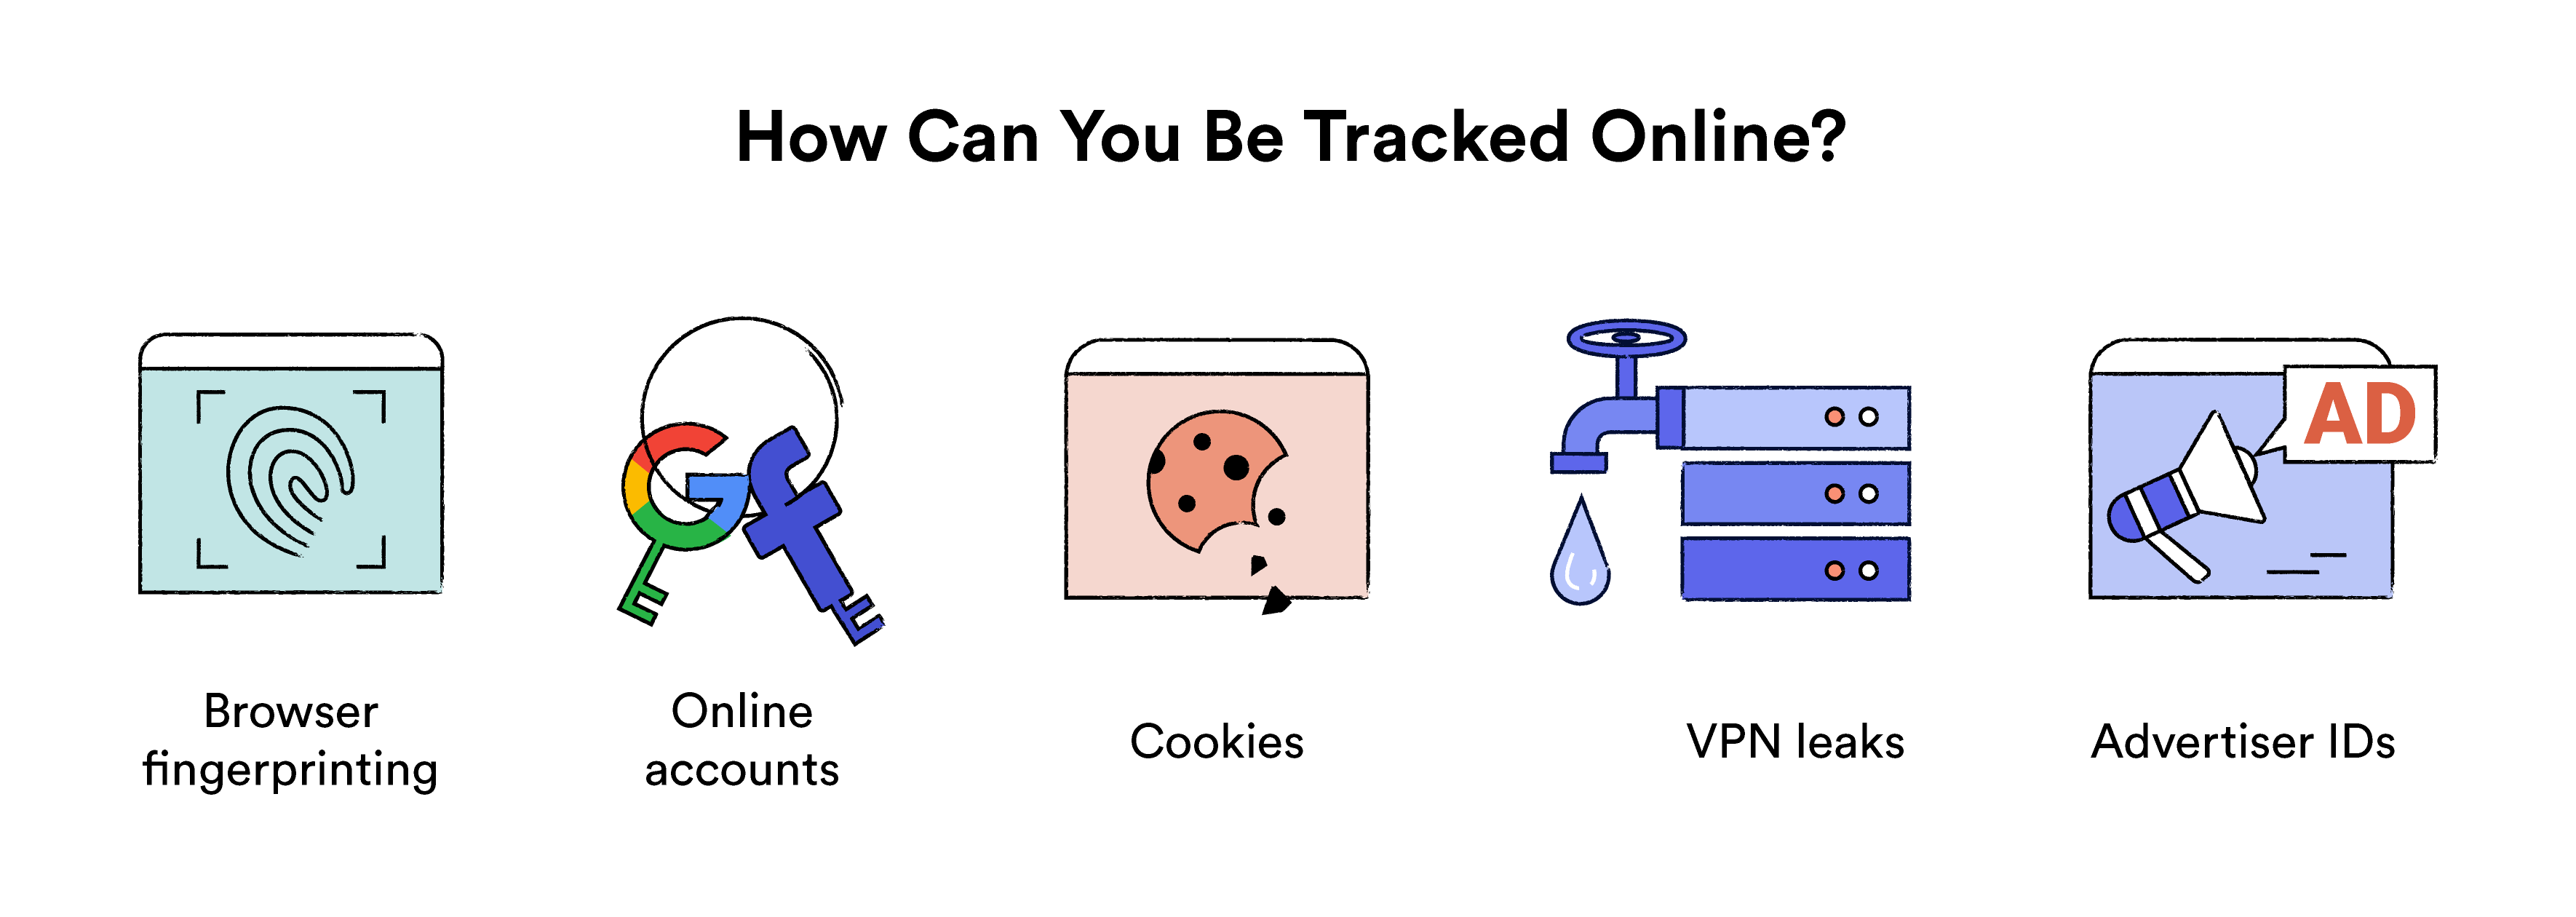 चित्रण दिखा रहा है कि आपको ऑनलाइन कैसे ट्रैक किया जा सकता है।